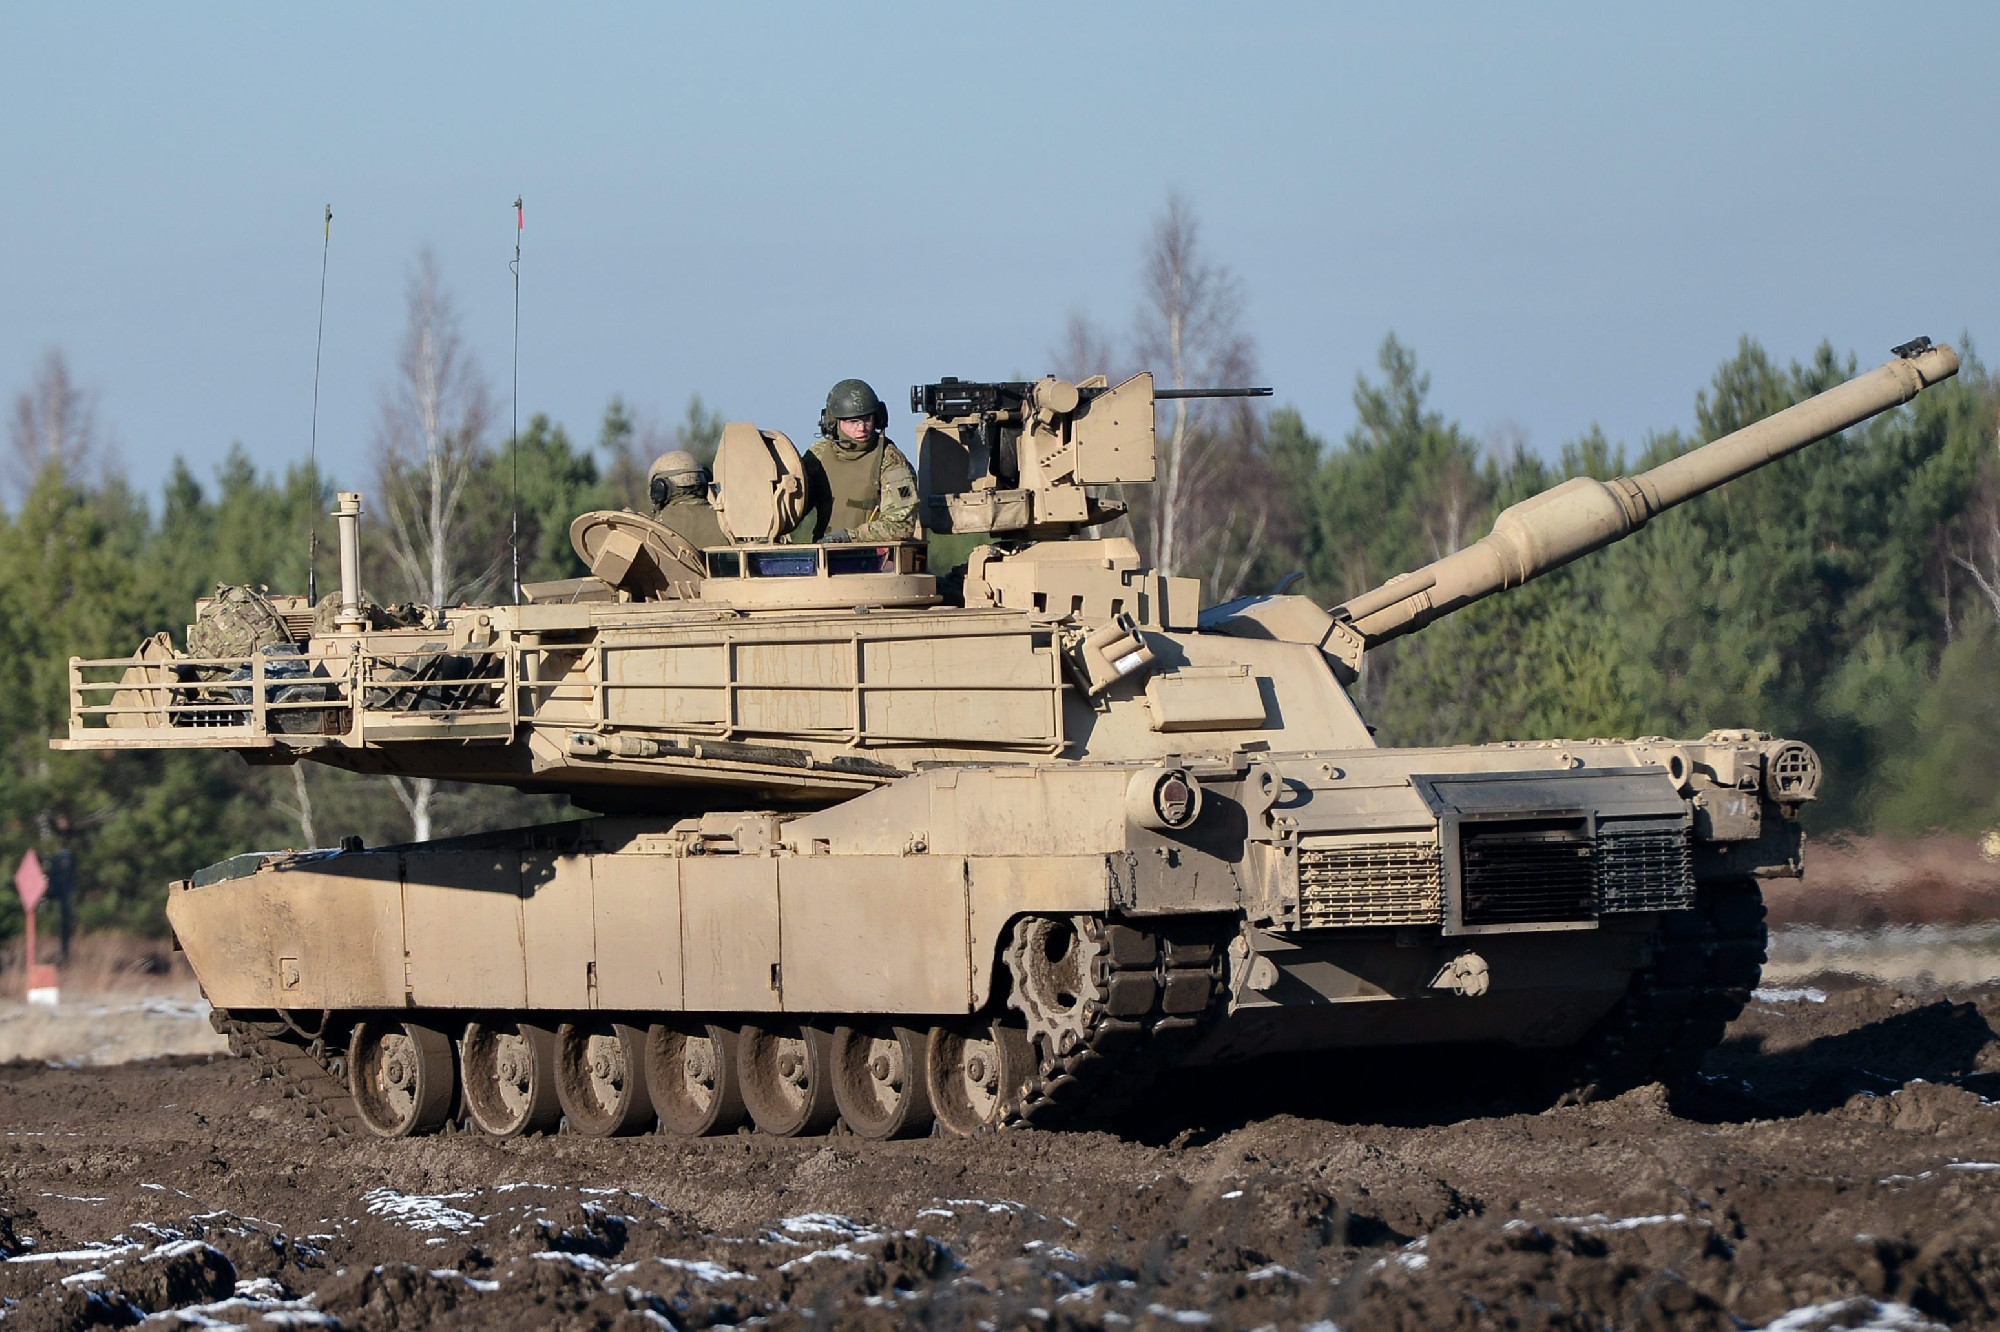 Lengyelország Leopard harckocsikat ad át Ukrajnának